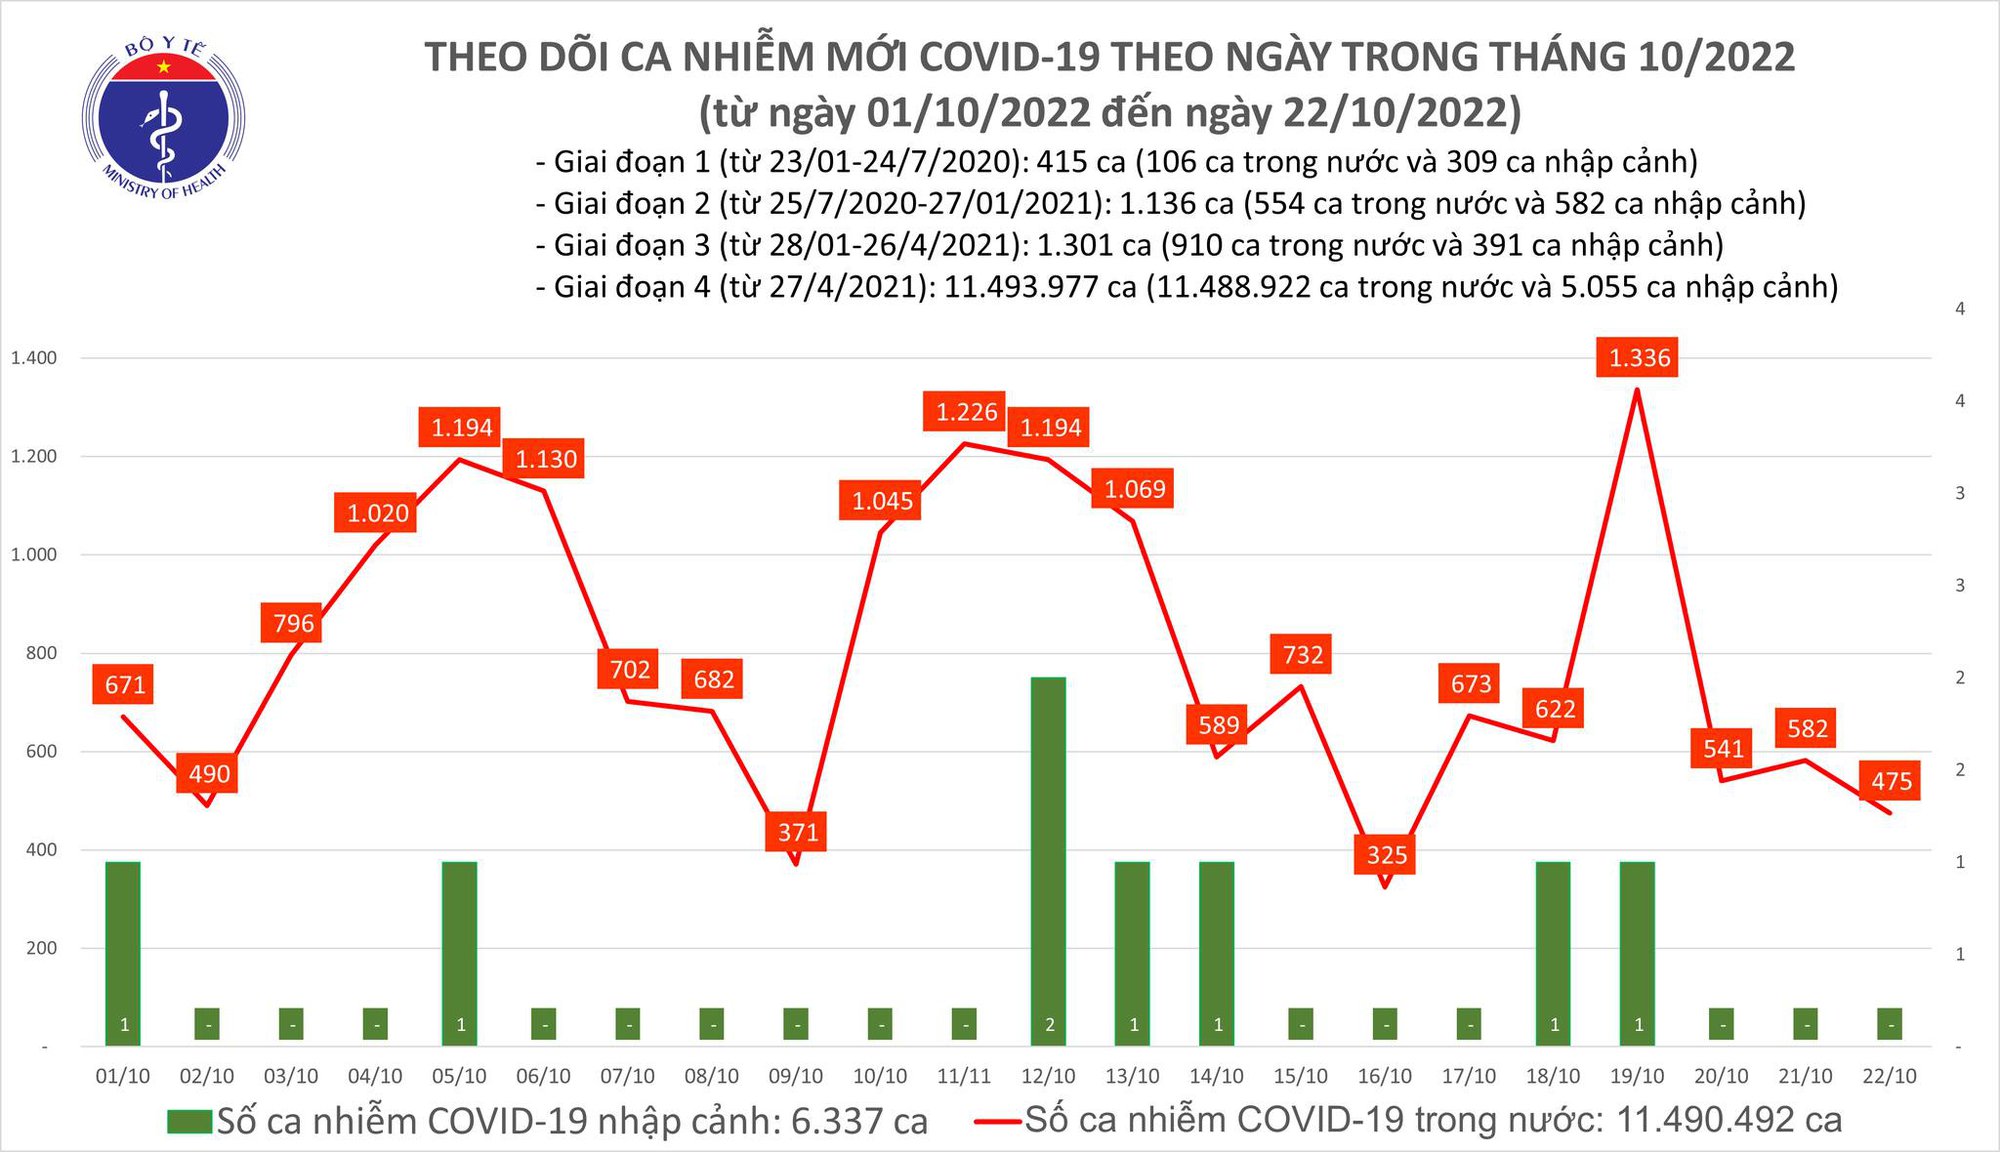 Covid-19 ngày 22/10: Giảm xuống dưới 500 ca - Ảnh 1.